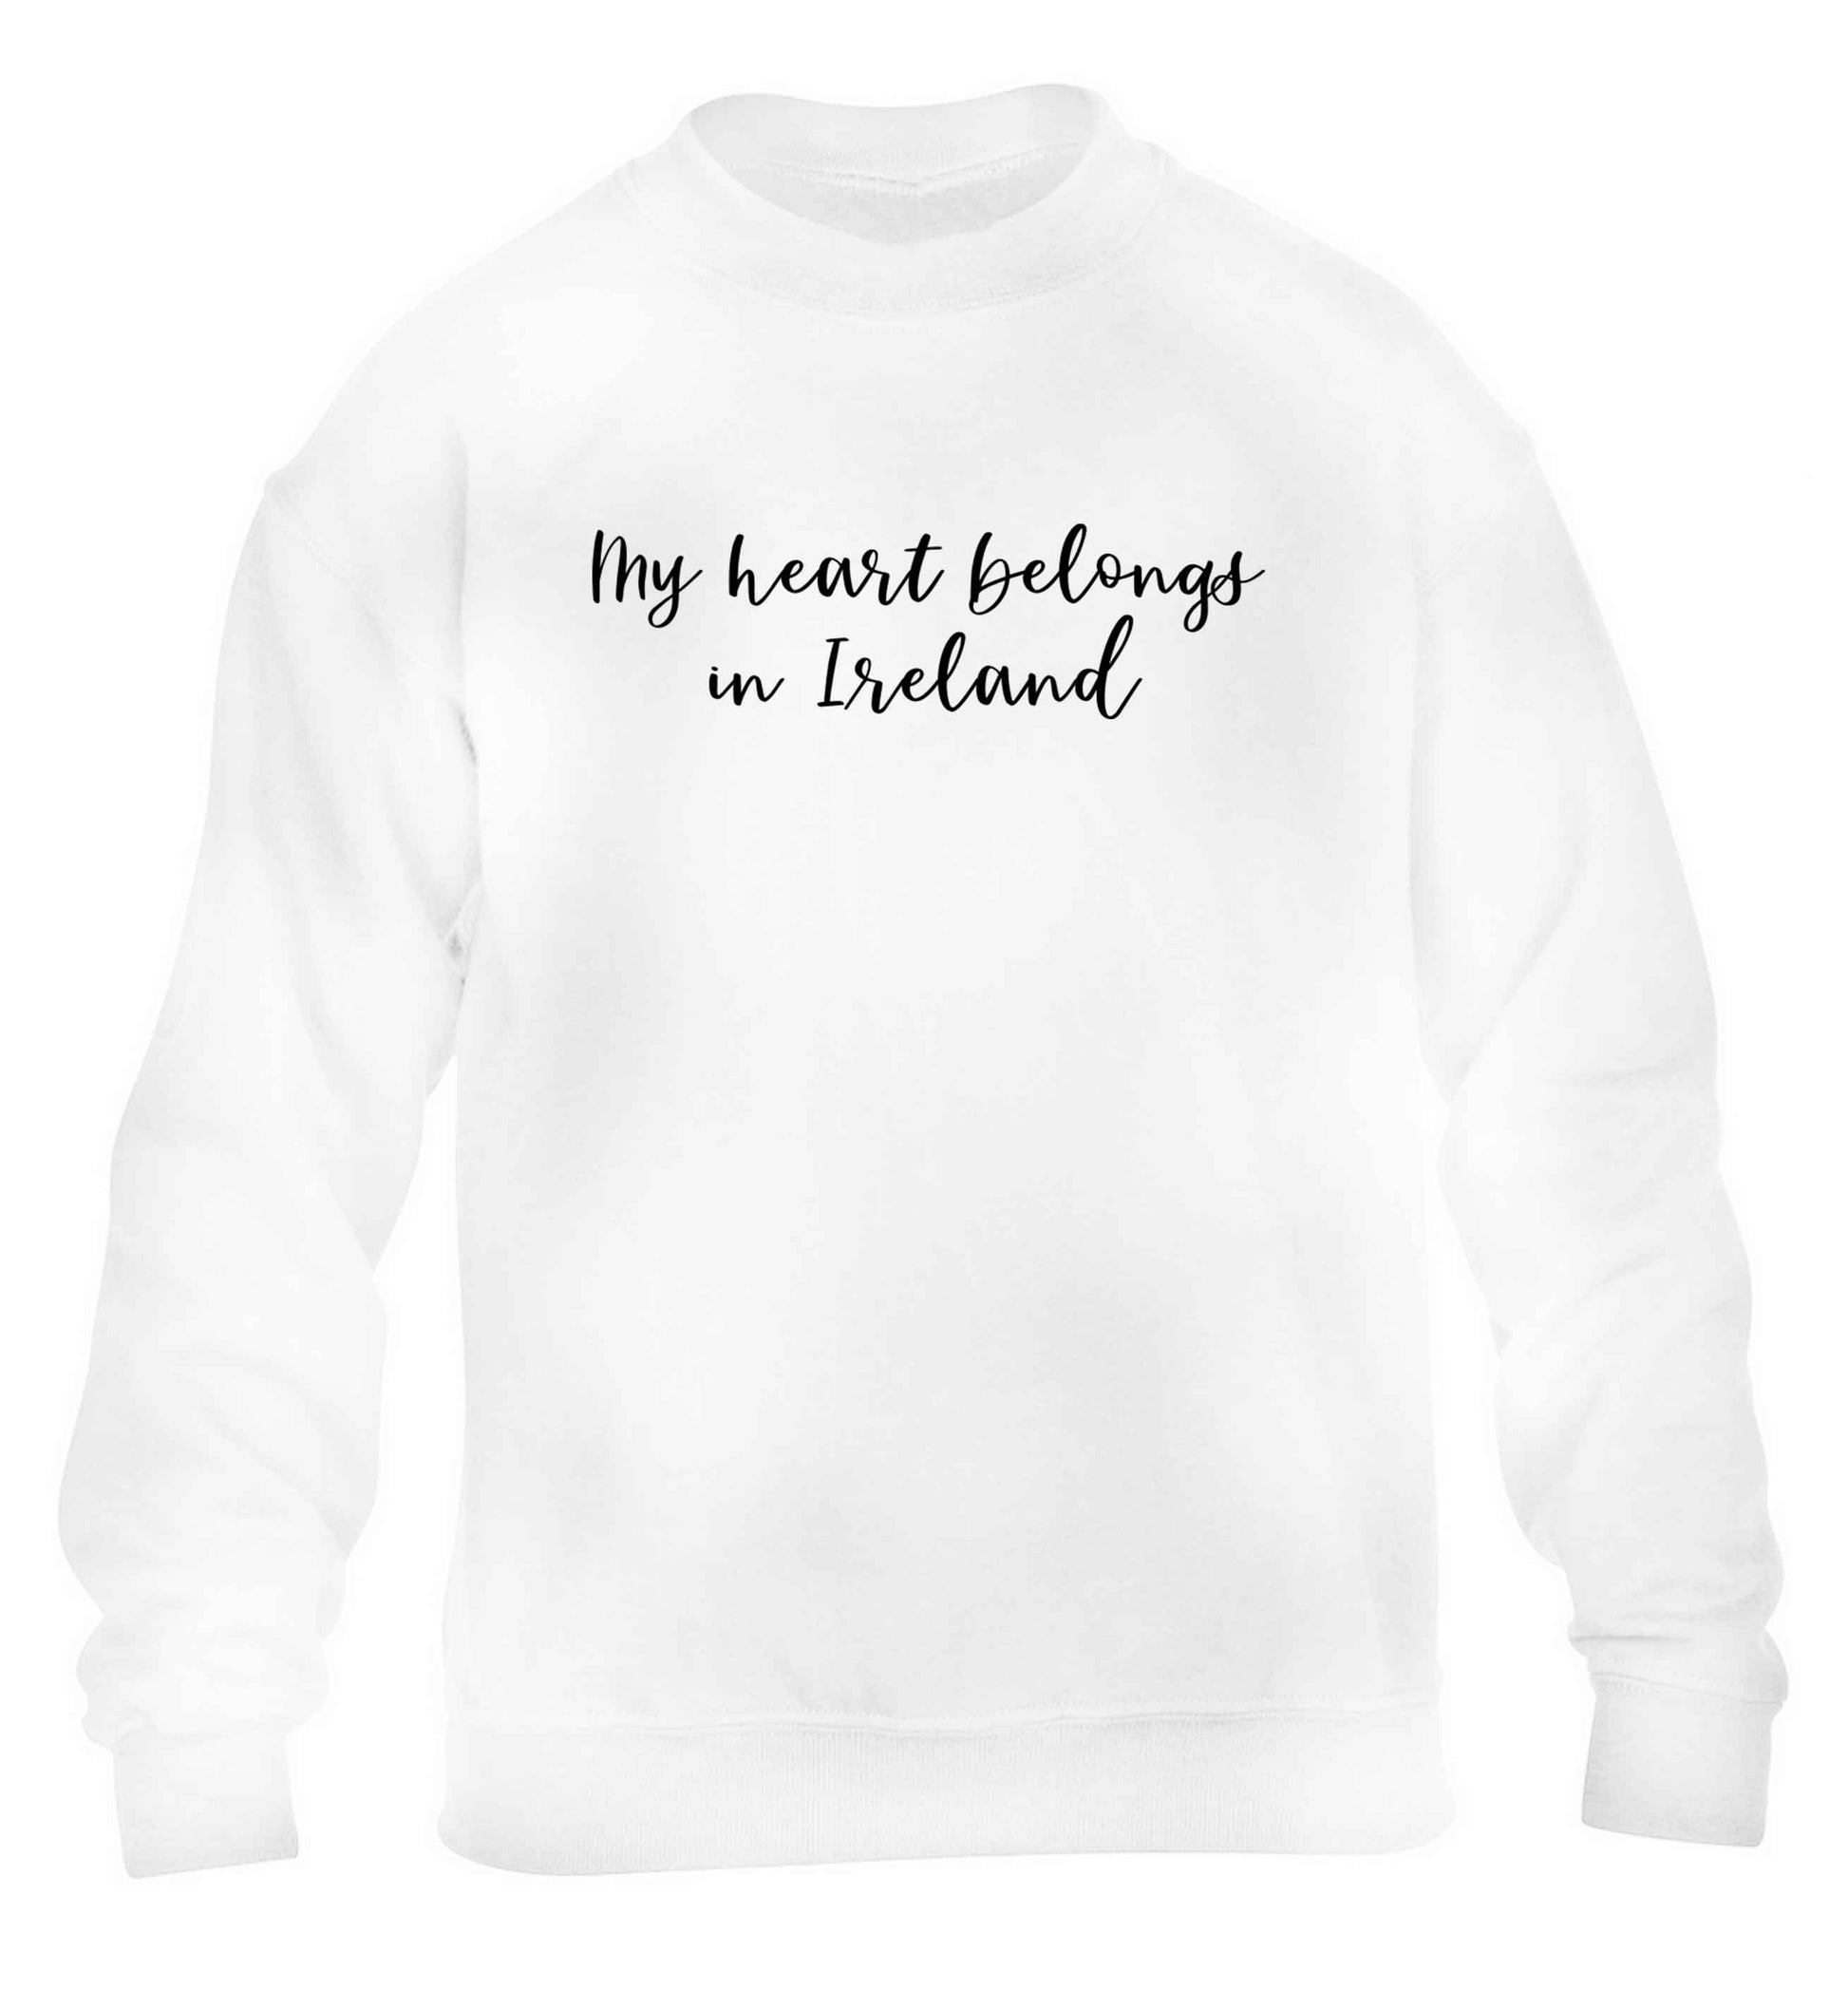 My heart belongs in Ireland children's white sweater 12-13 Years